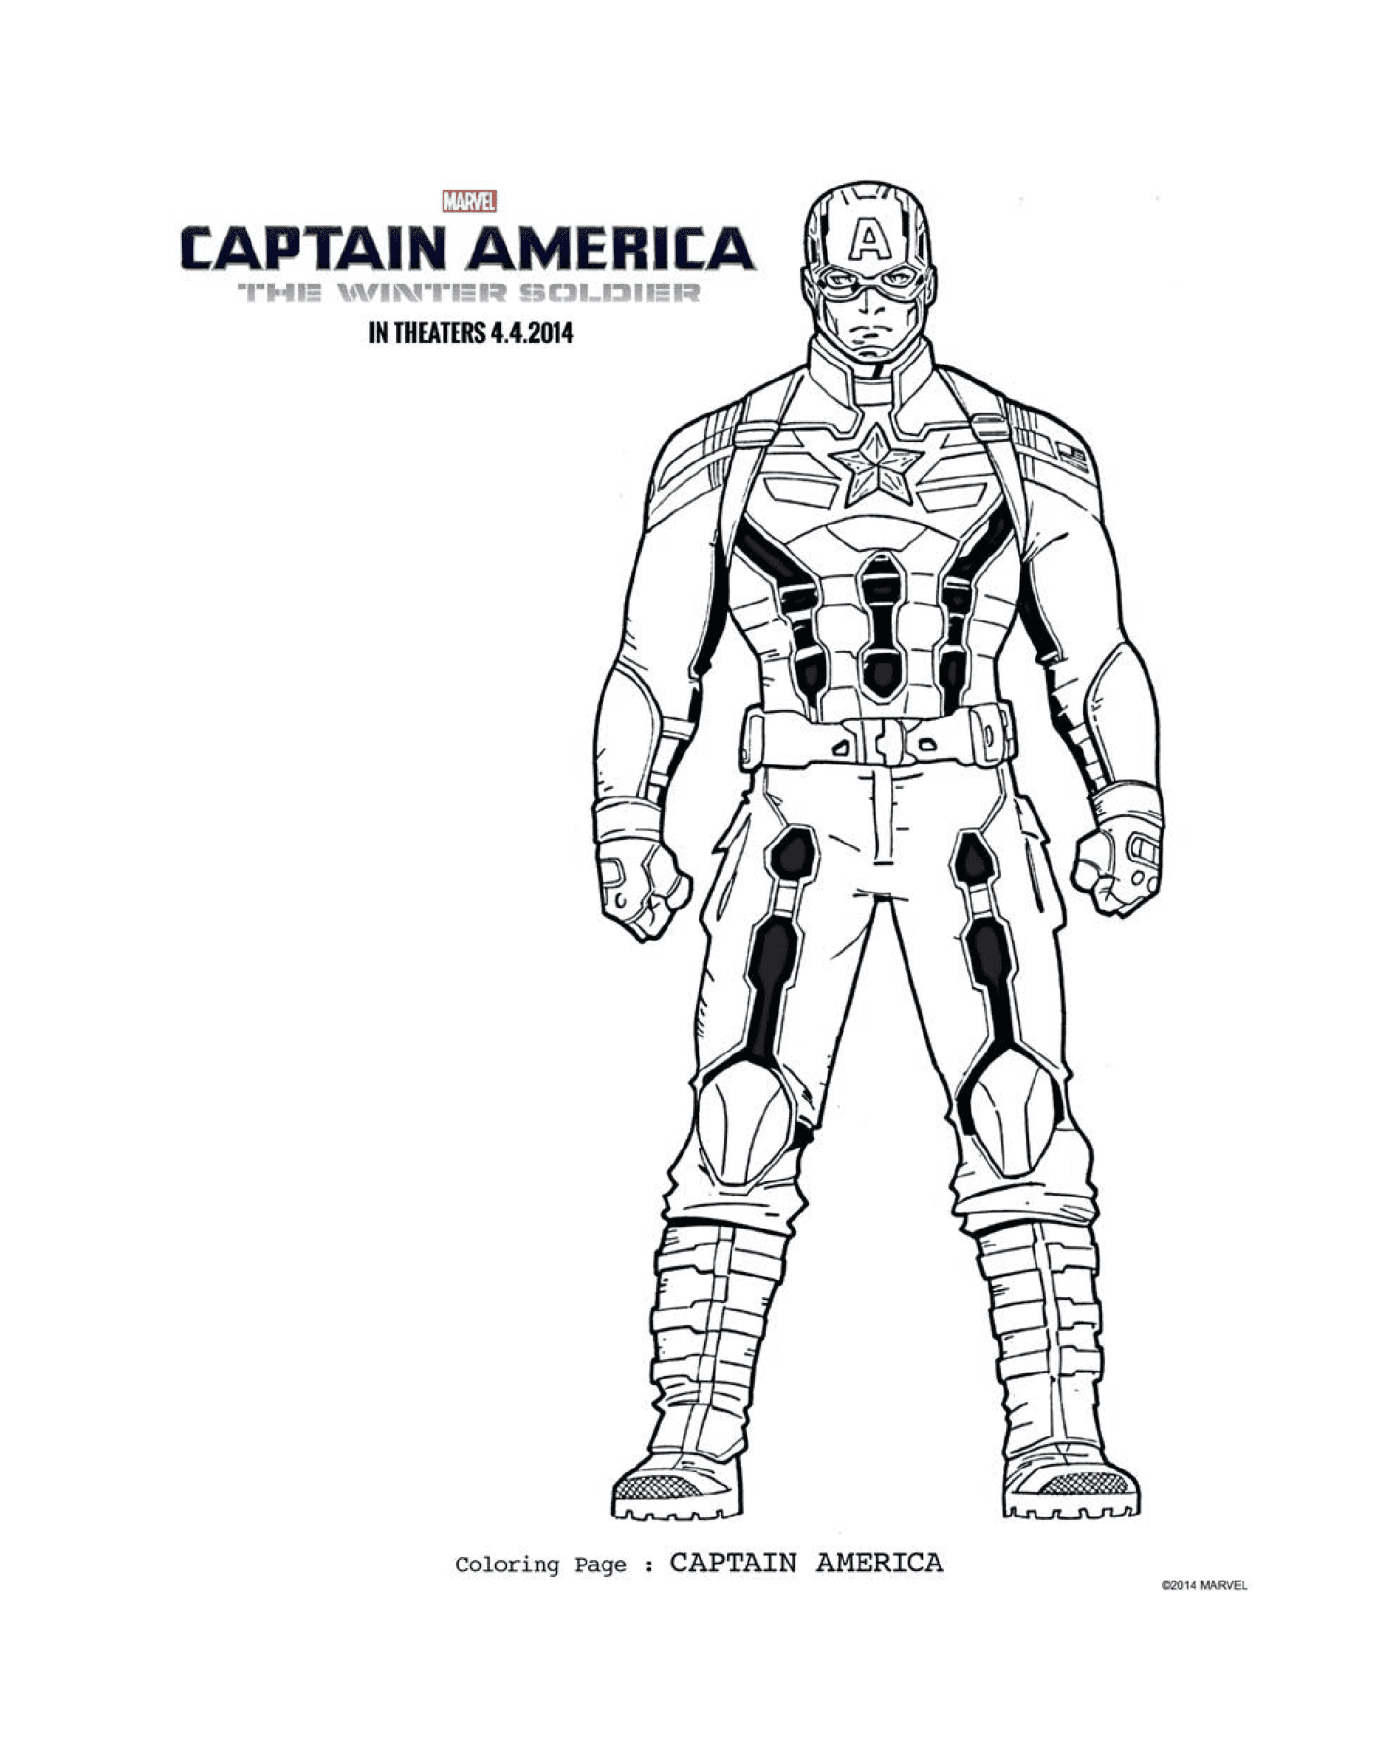  कप्तान अमेरिका 67, एक आदमी की तस्वीर का रंग 